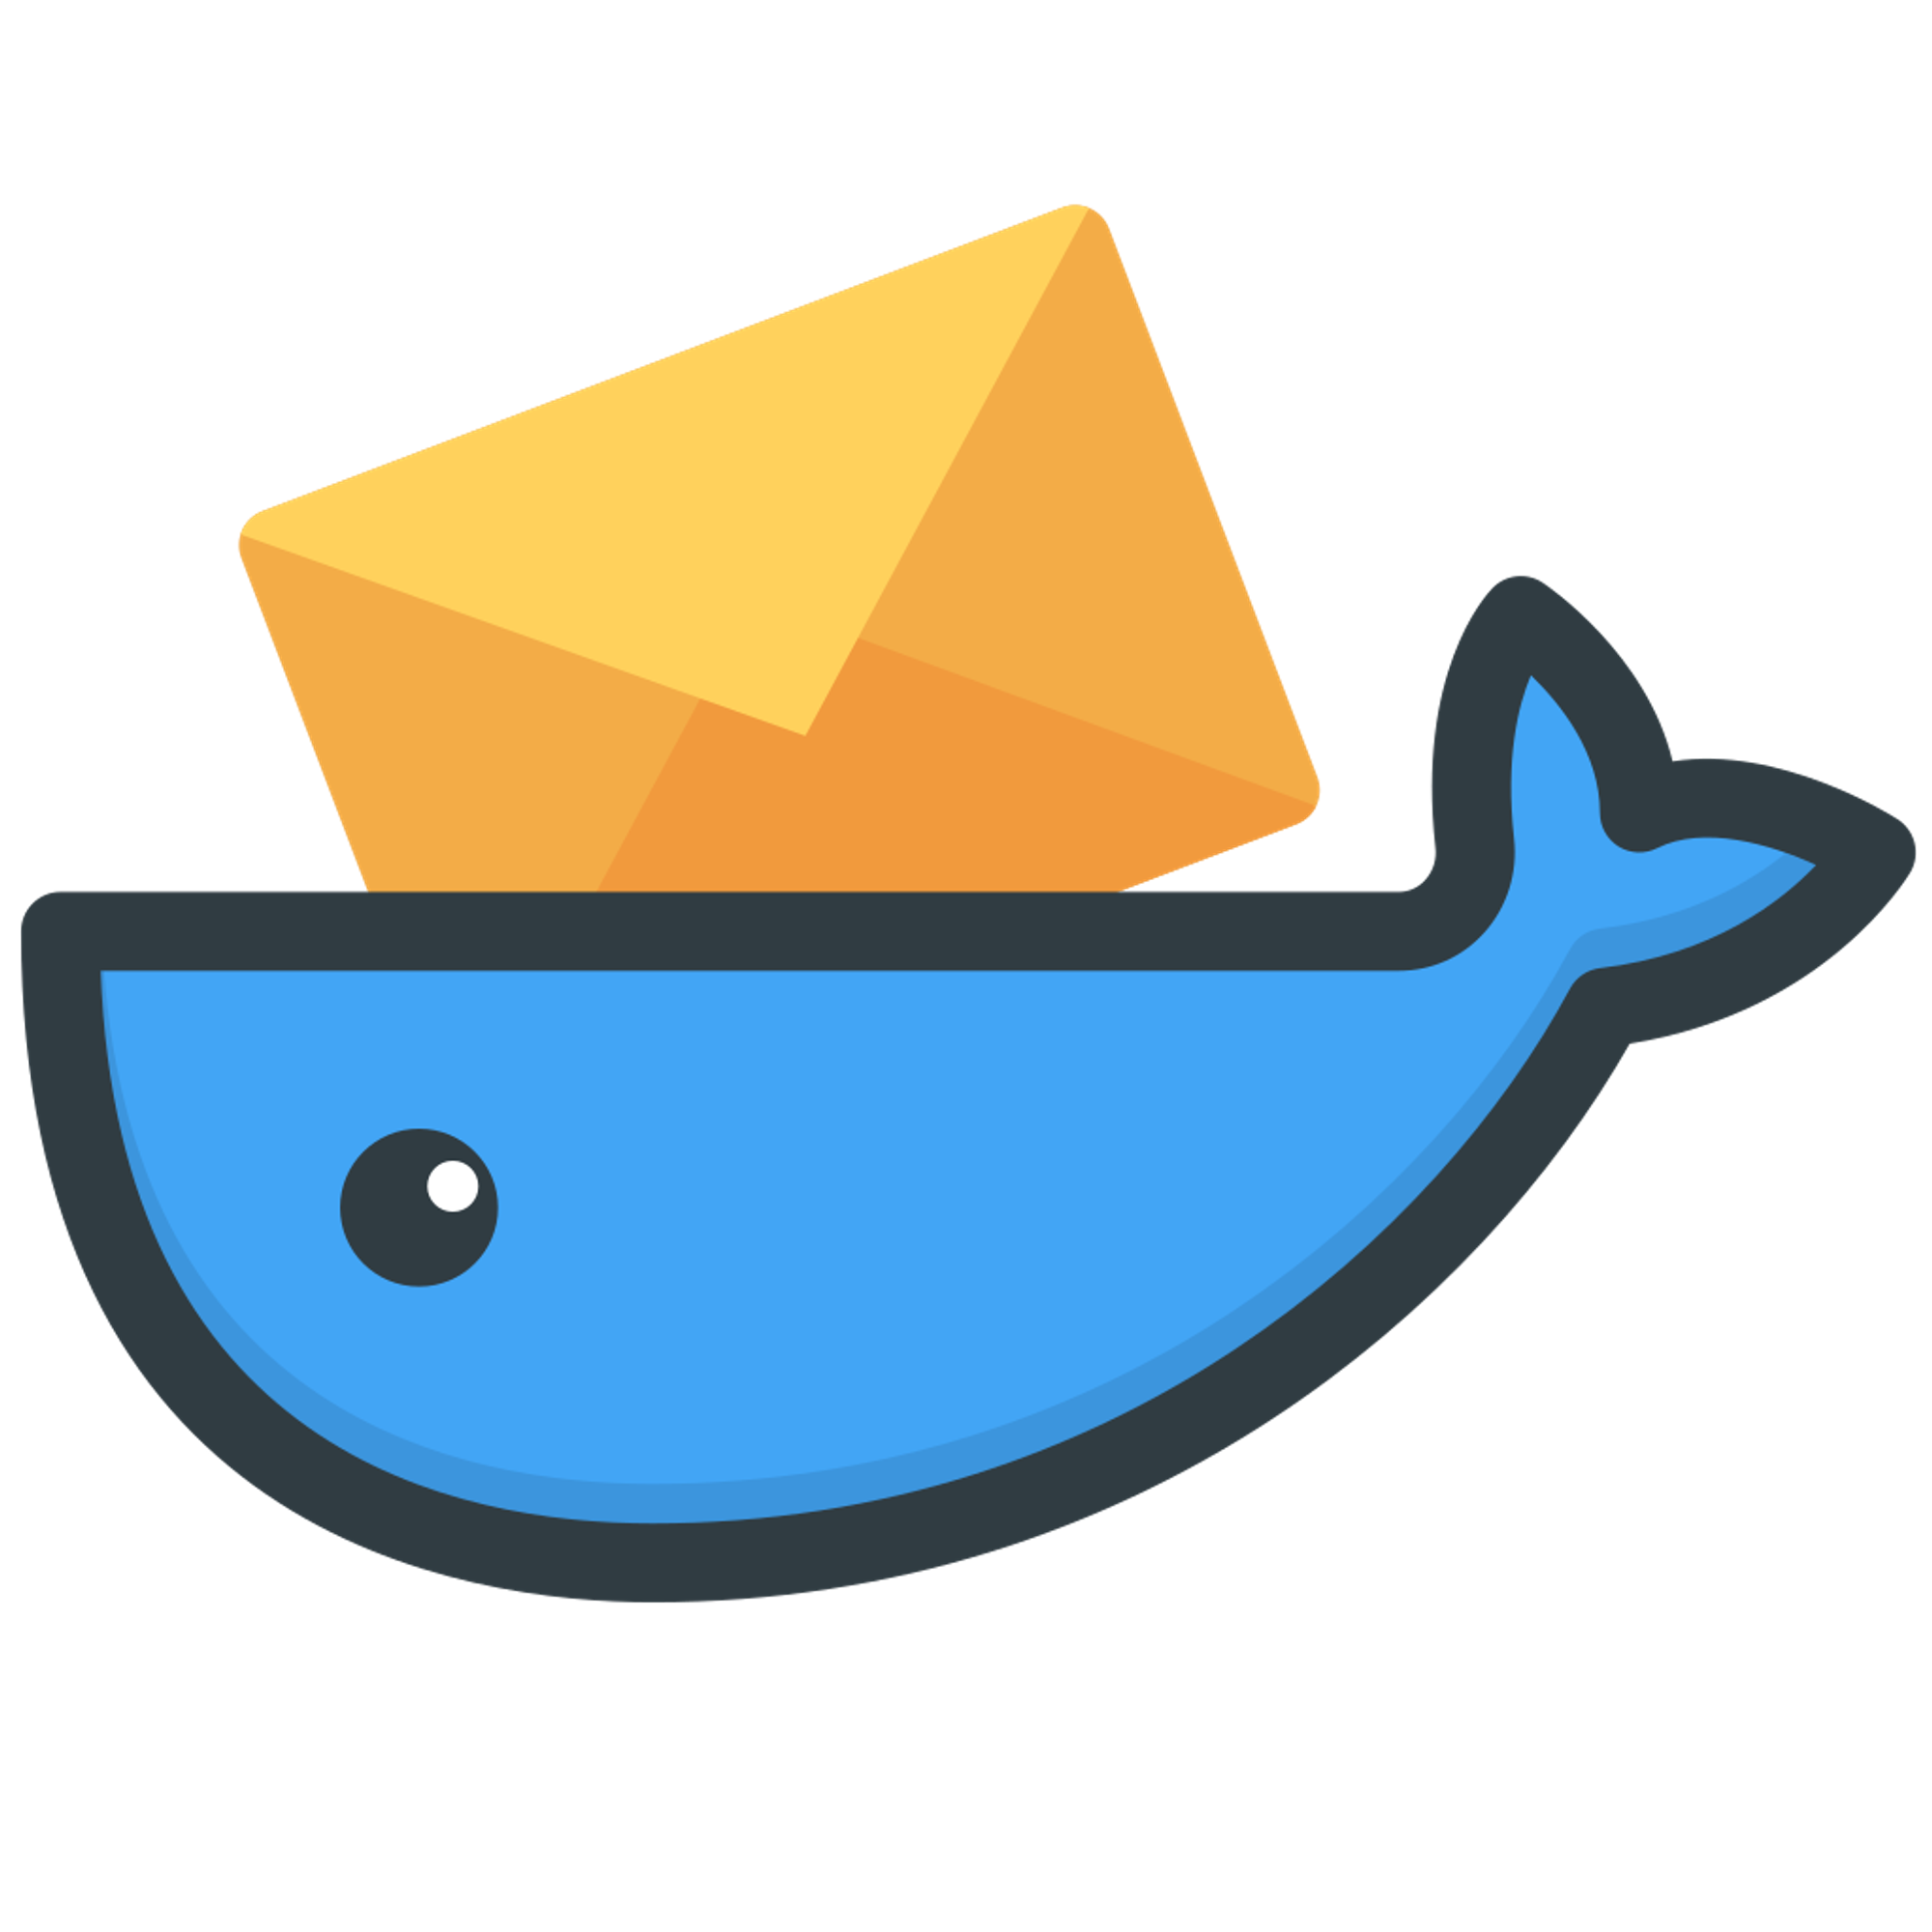 GitHub - docker-mailserver/docker-mailserver: Production-ready fullstack but simple mail server (SMTP, IMAP, LDAP, Antispam, Antivirus, etc.) running inside a container.